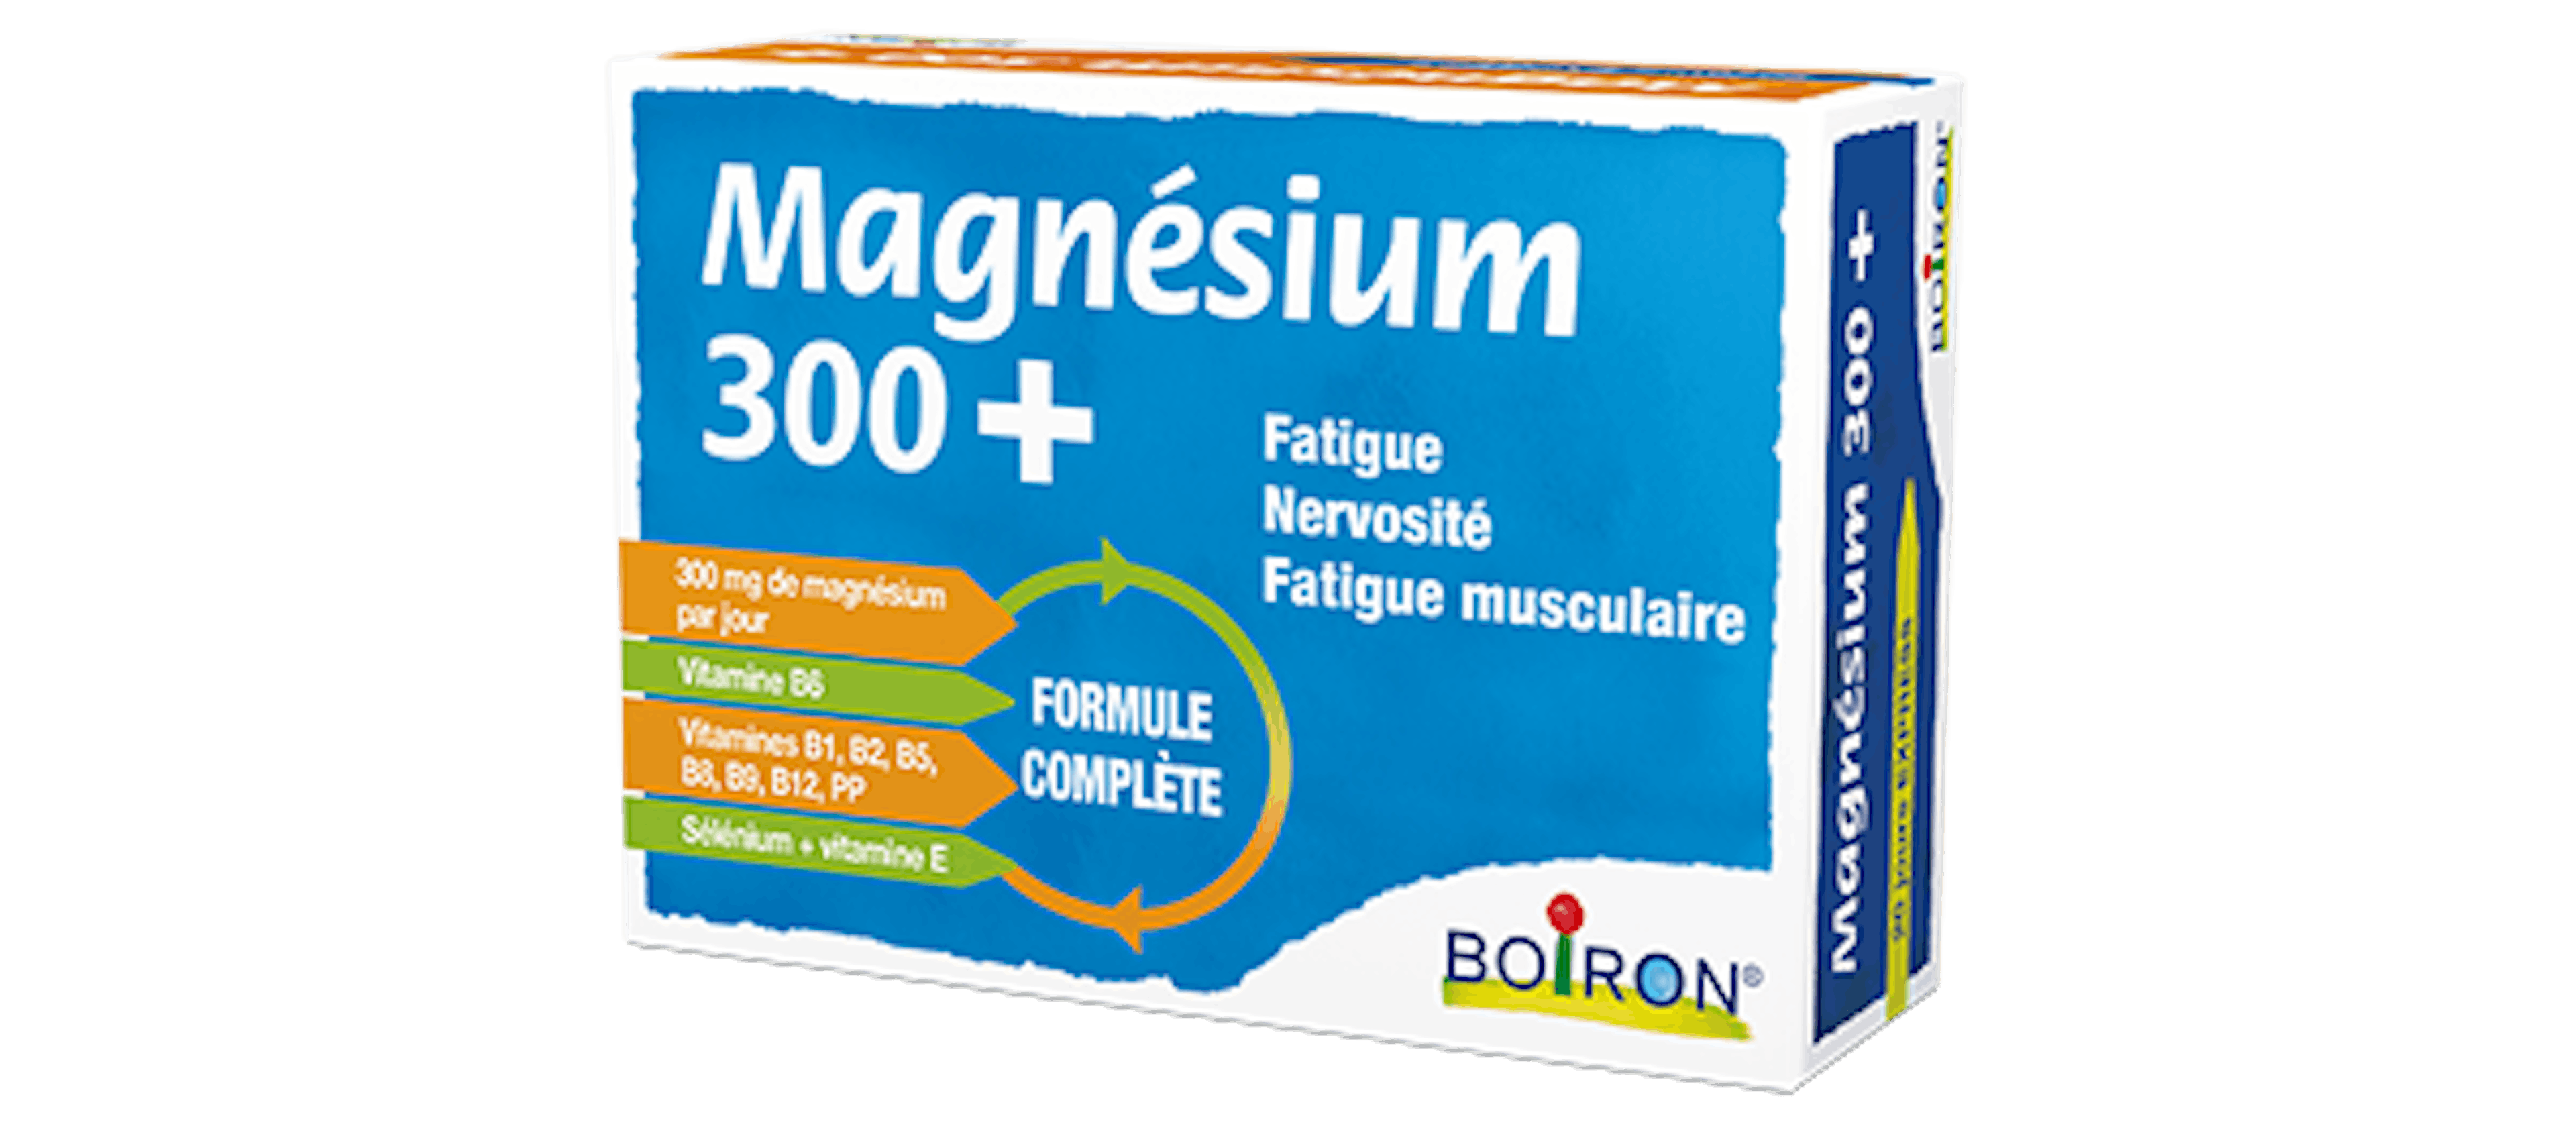 Réduire la fatigue, améliore fonction musculaire - MAGNESIUM 300+ Boiron